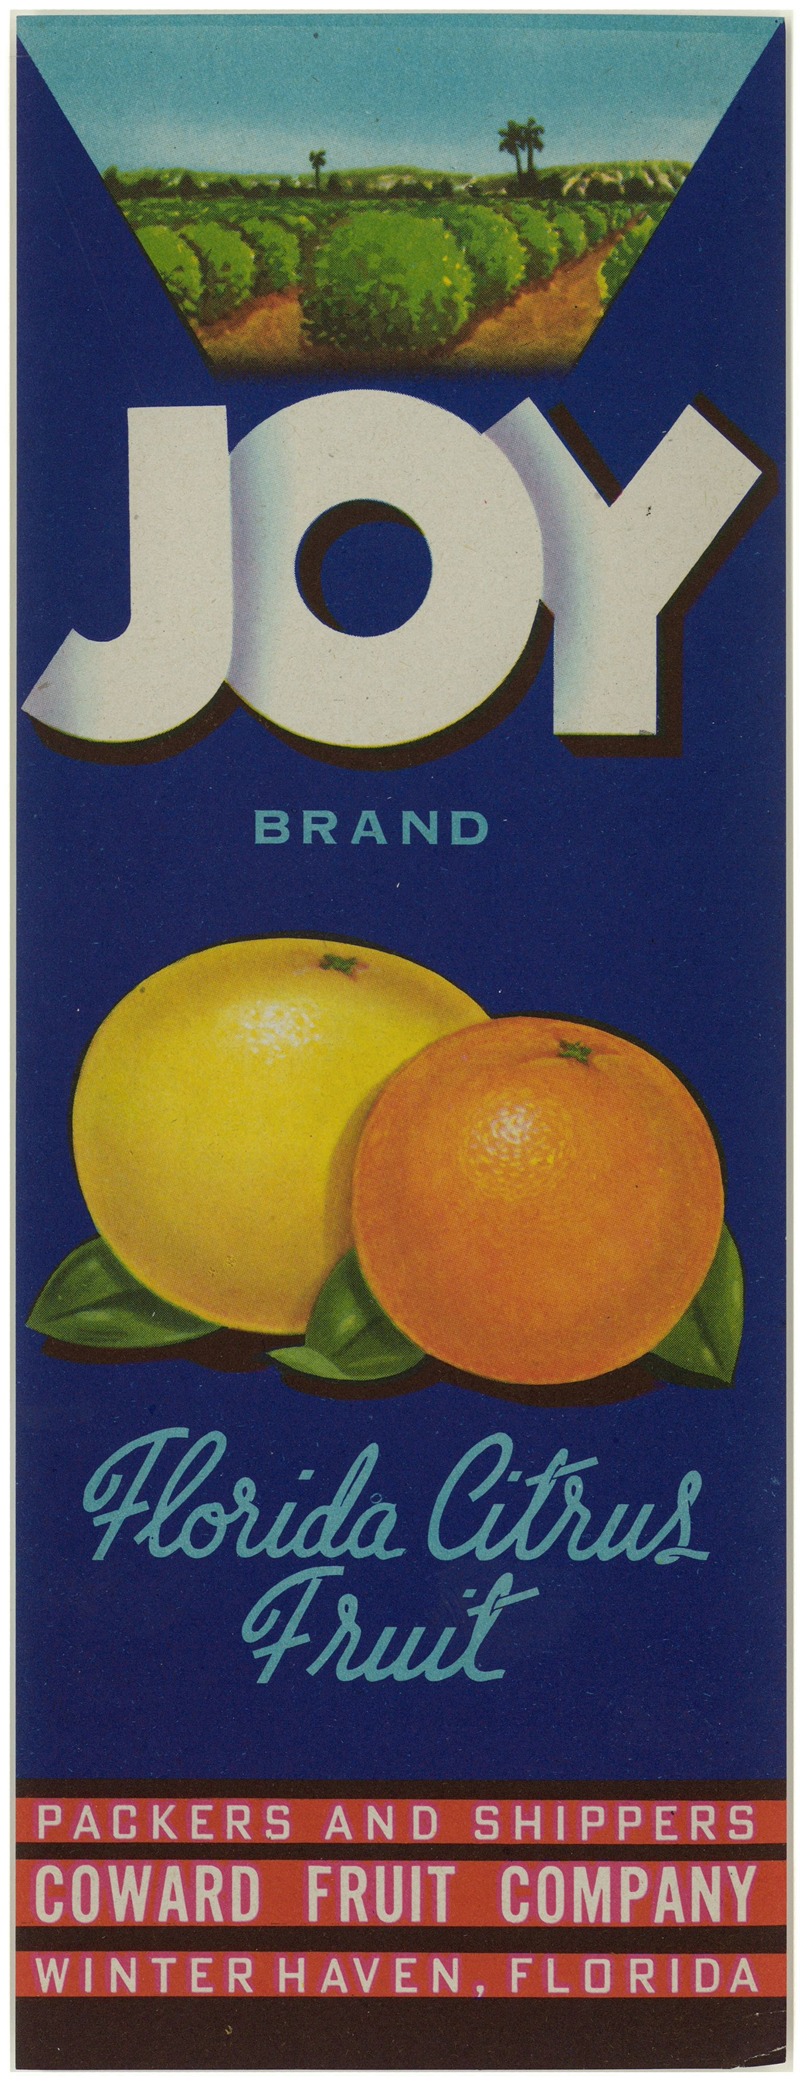 Anonymous - Joy Brand Florida Citrus Fruit Label